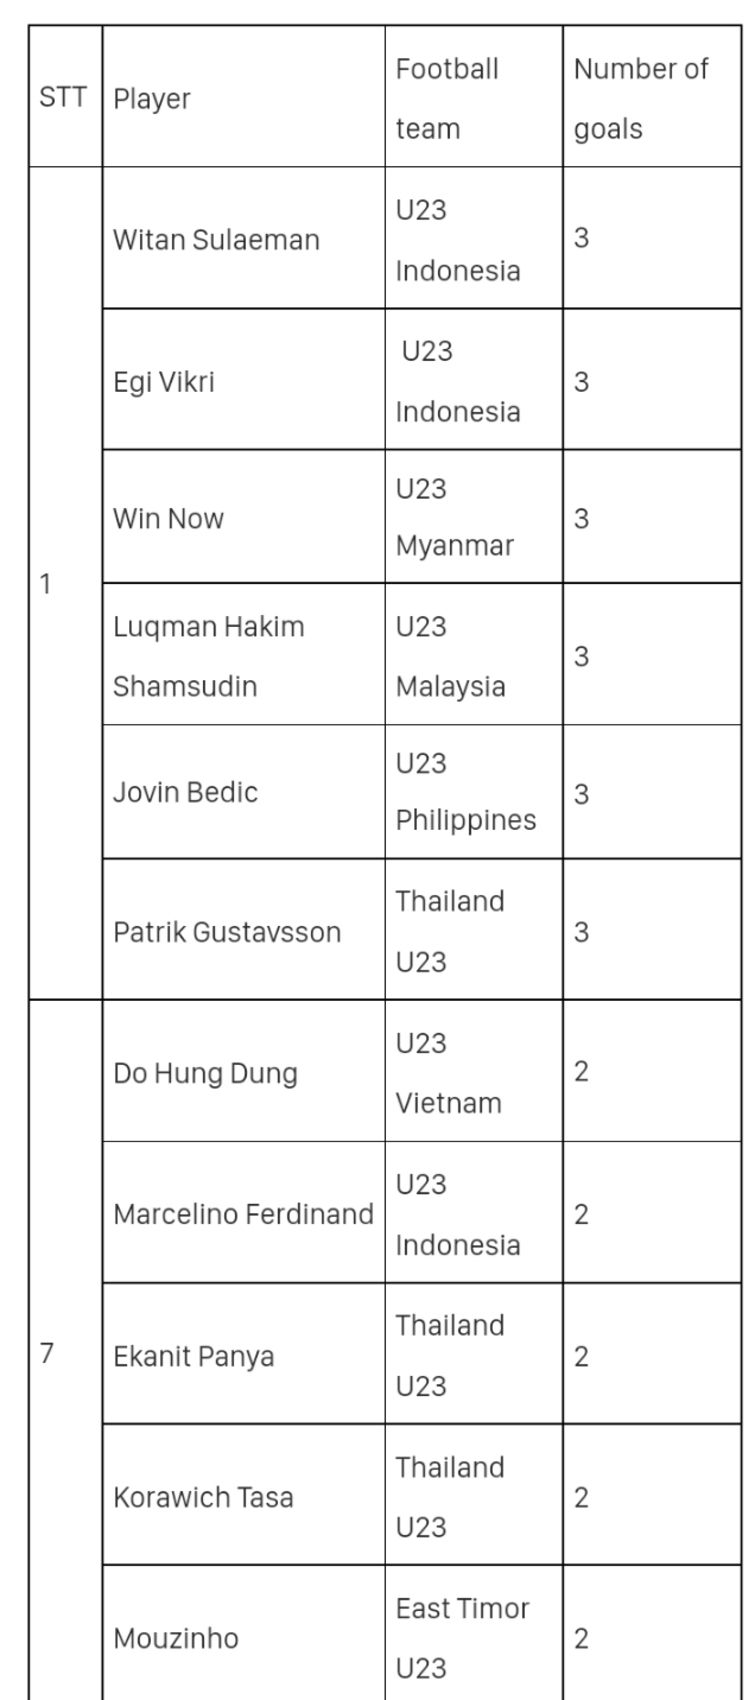 UPDATE, Top Scorer Sementara di Sea Games 2021: Dimana Peringkat Witan Sulaeman dan Egy MV?